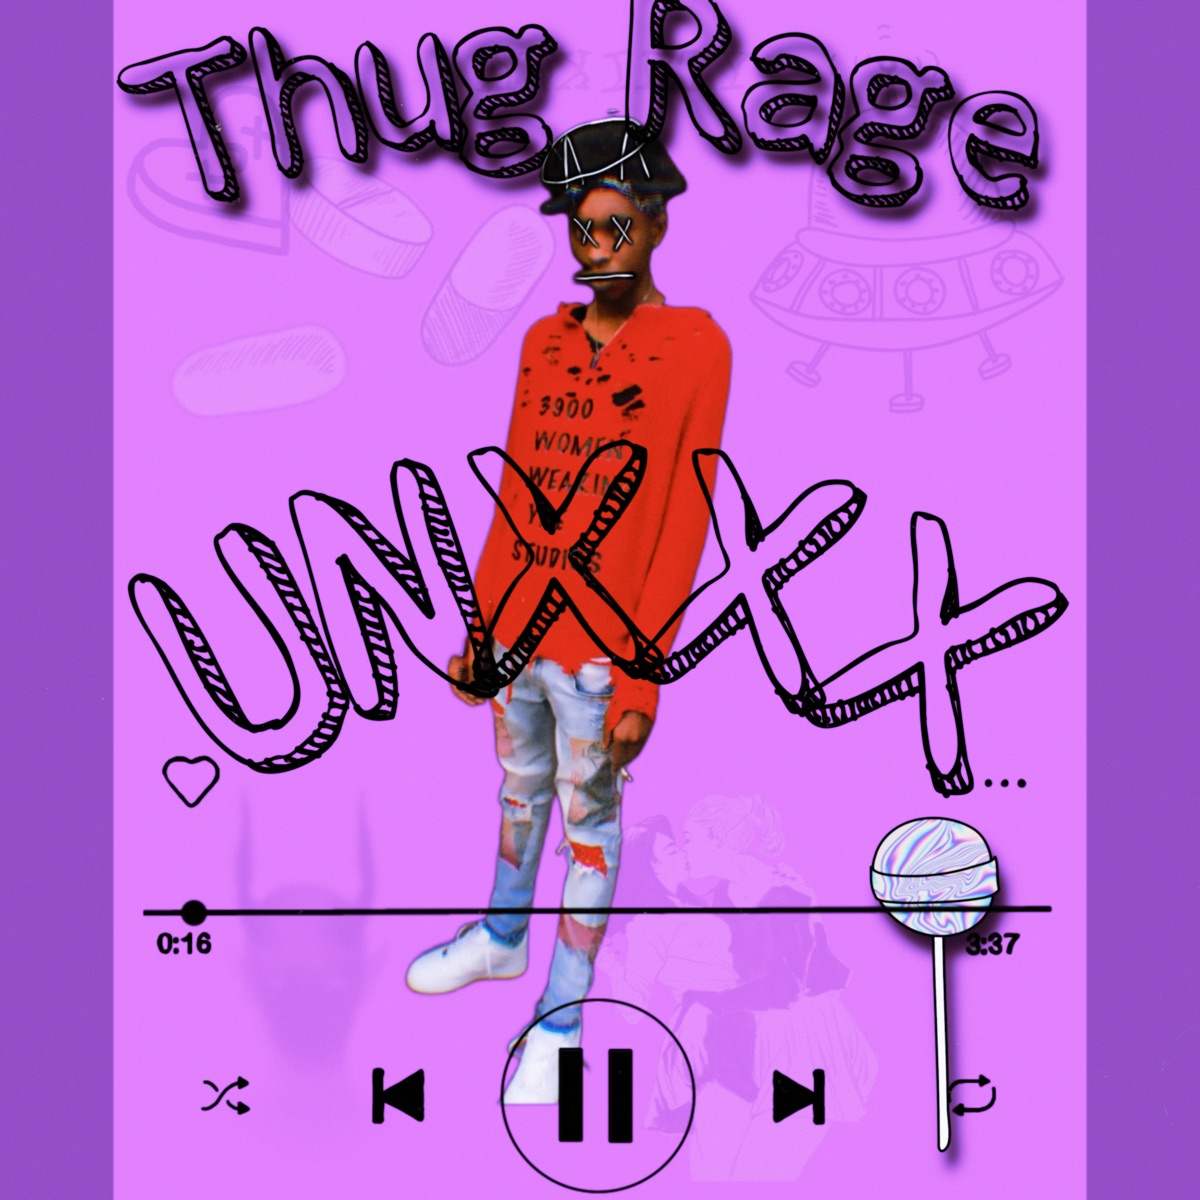 Unxxx - Album by Thug Rage - Apple Music